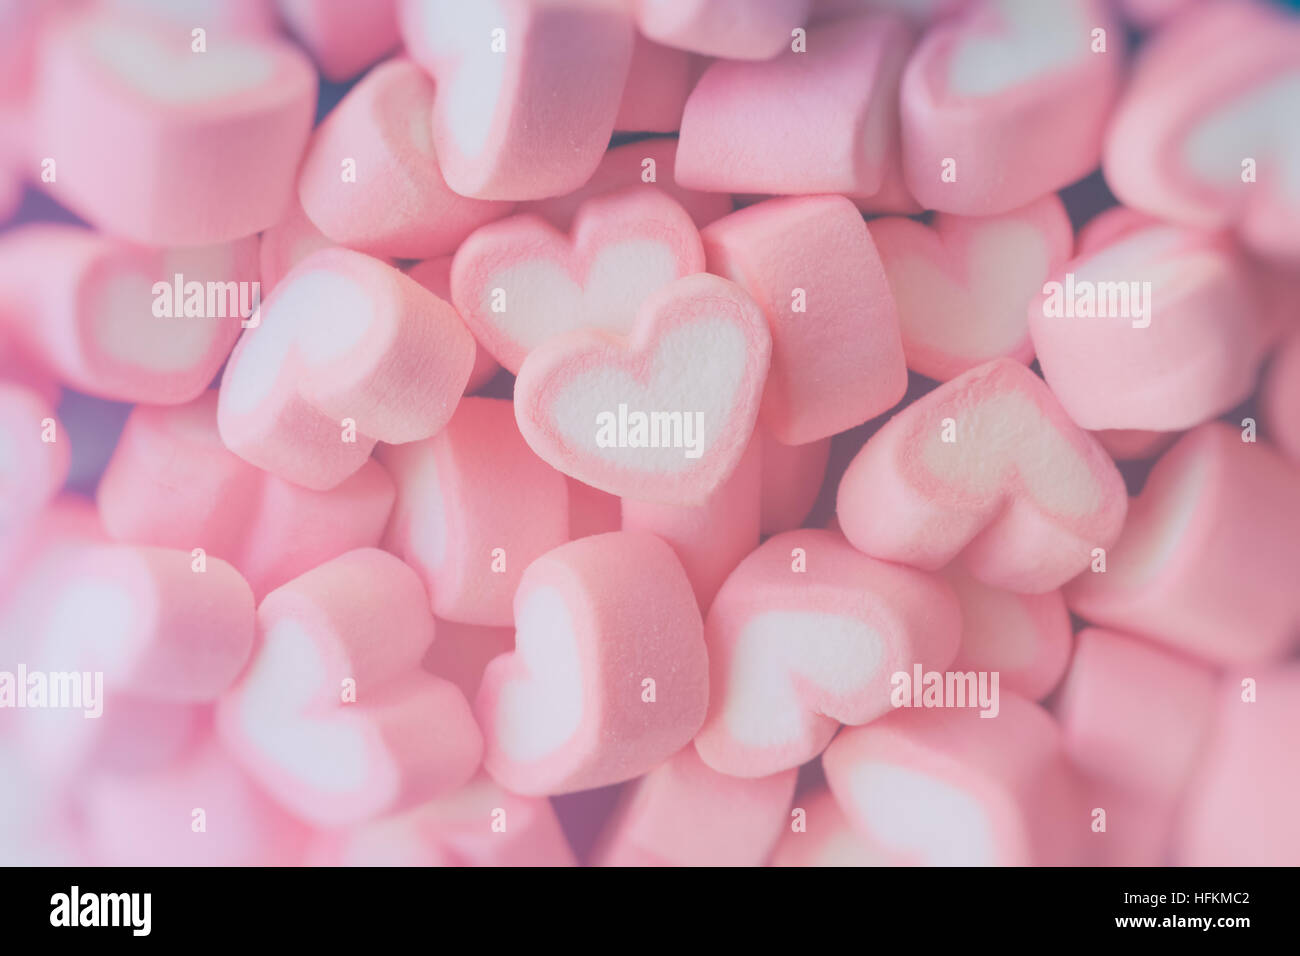 Đã bao giờ bạn muốn thưởng thức một chiếc bánh marshmallow ngọt ngào nằm trong trái tim hồng mà mình không thể kỳ diệu hơn không? Tìm kiếm hình ảnh Pink heart shape marshmallow và sẵn sàng để bị đắm chìm trong vẻ đẹp mê hoặc của nó.